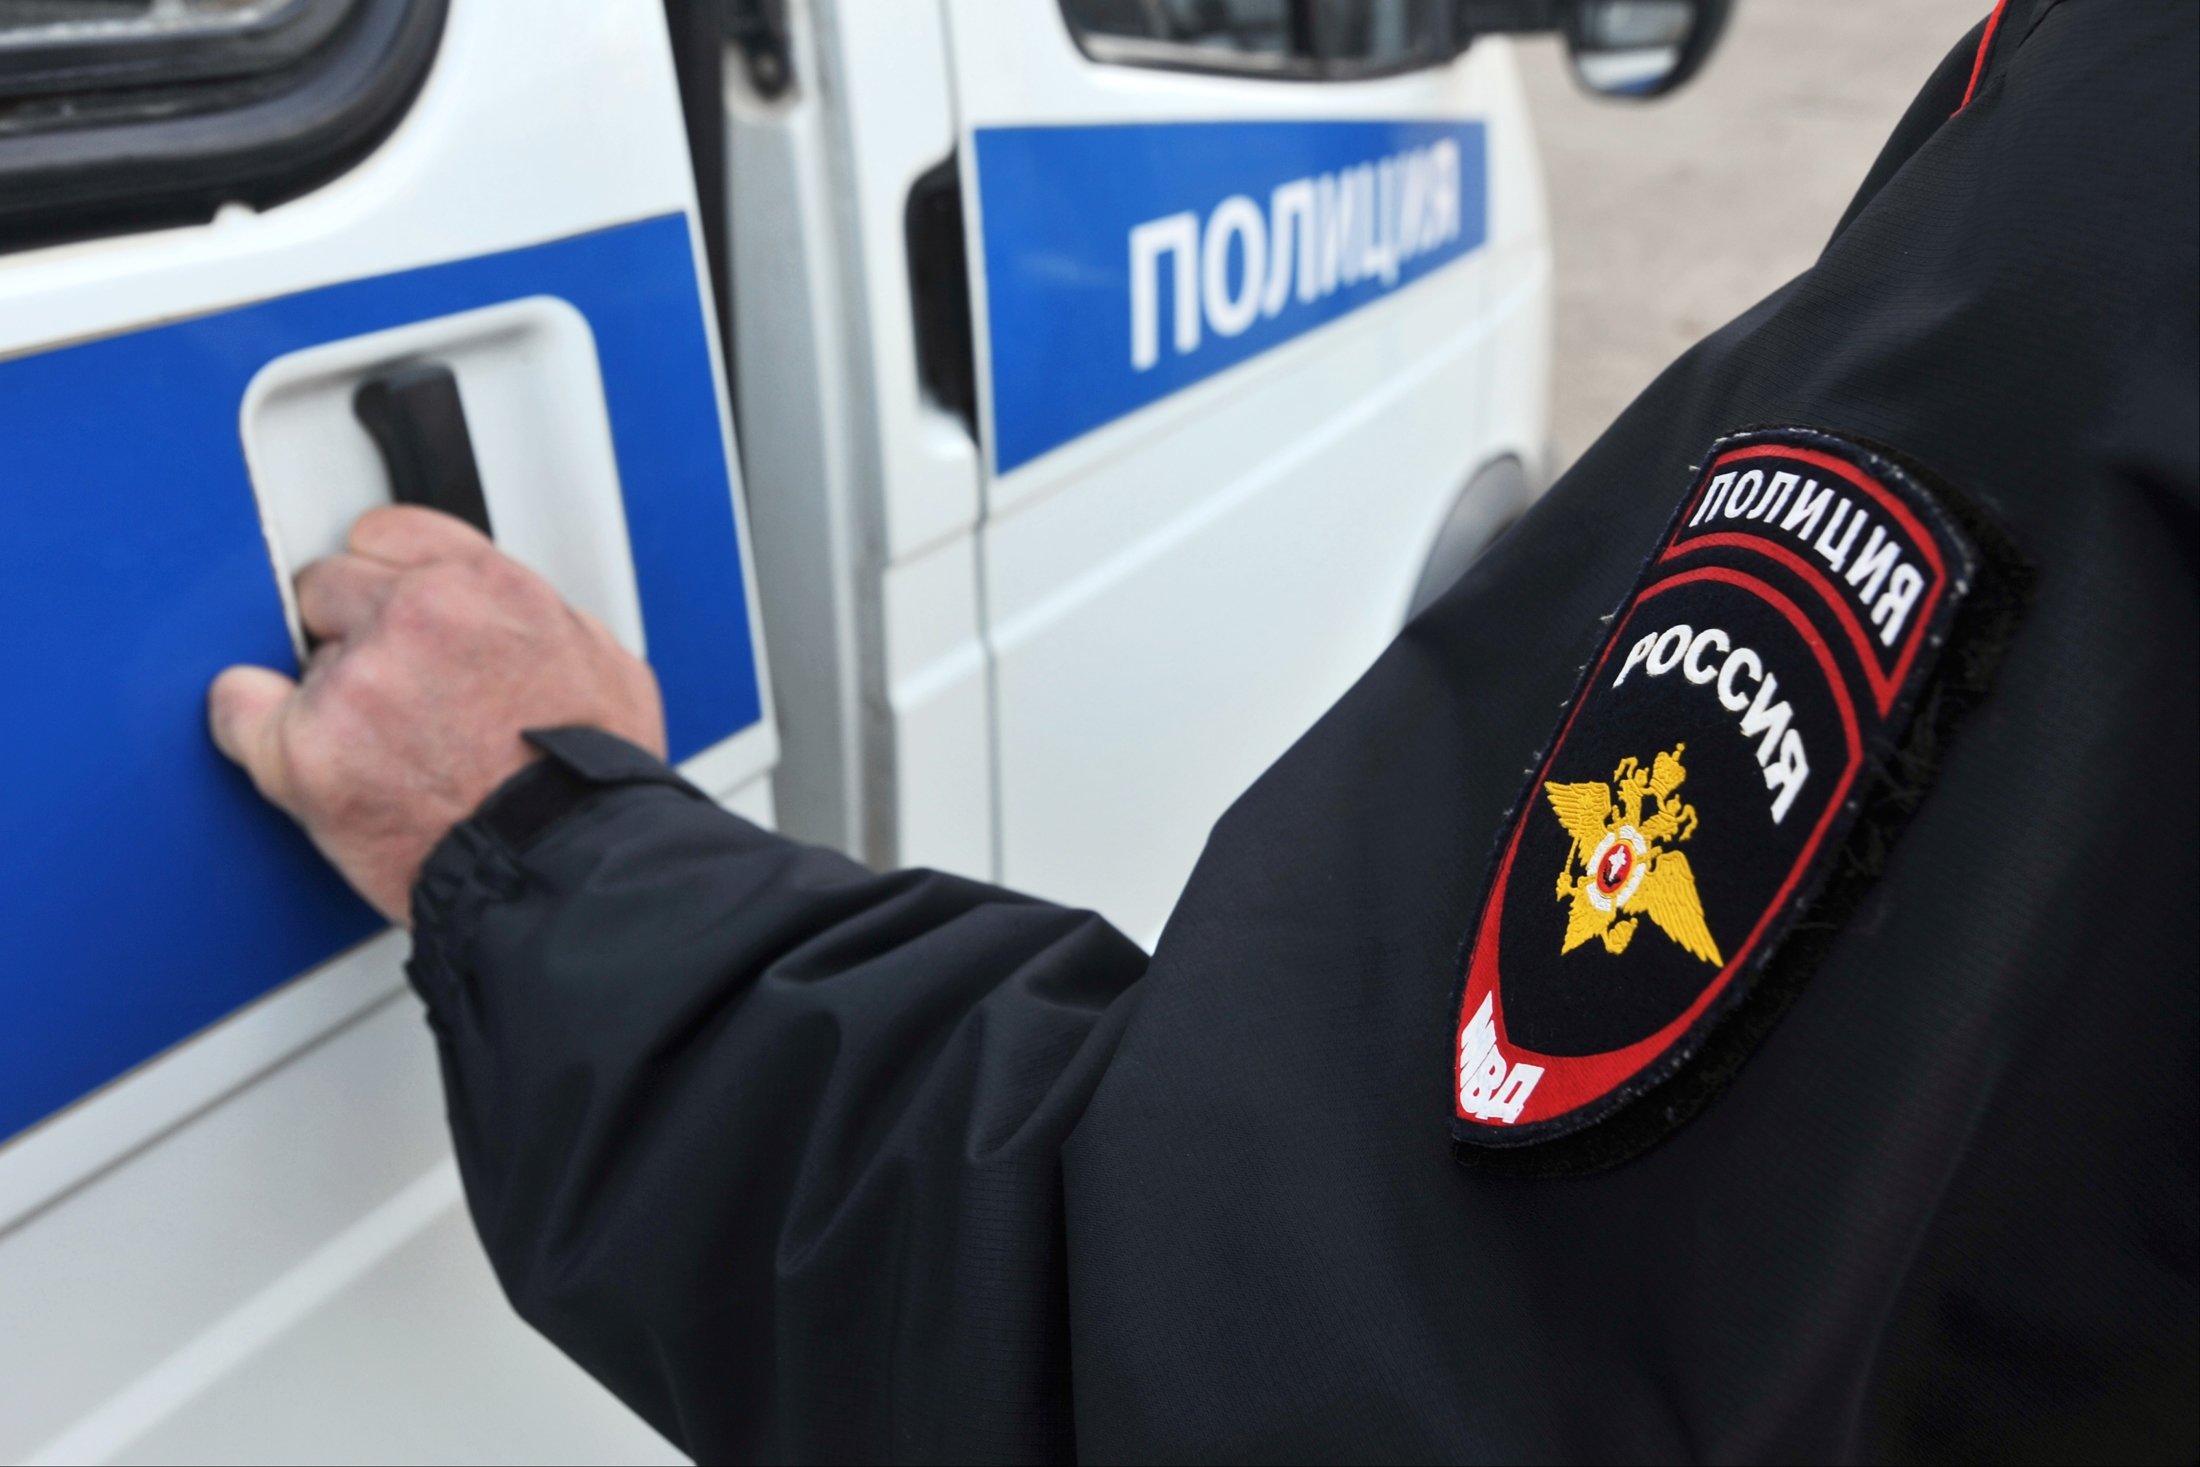 Жителей Тульской области задержали по подозрению в краже смартфонов на 1 млн рублей